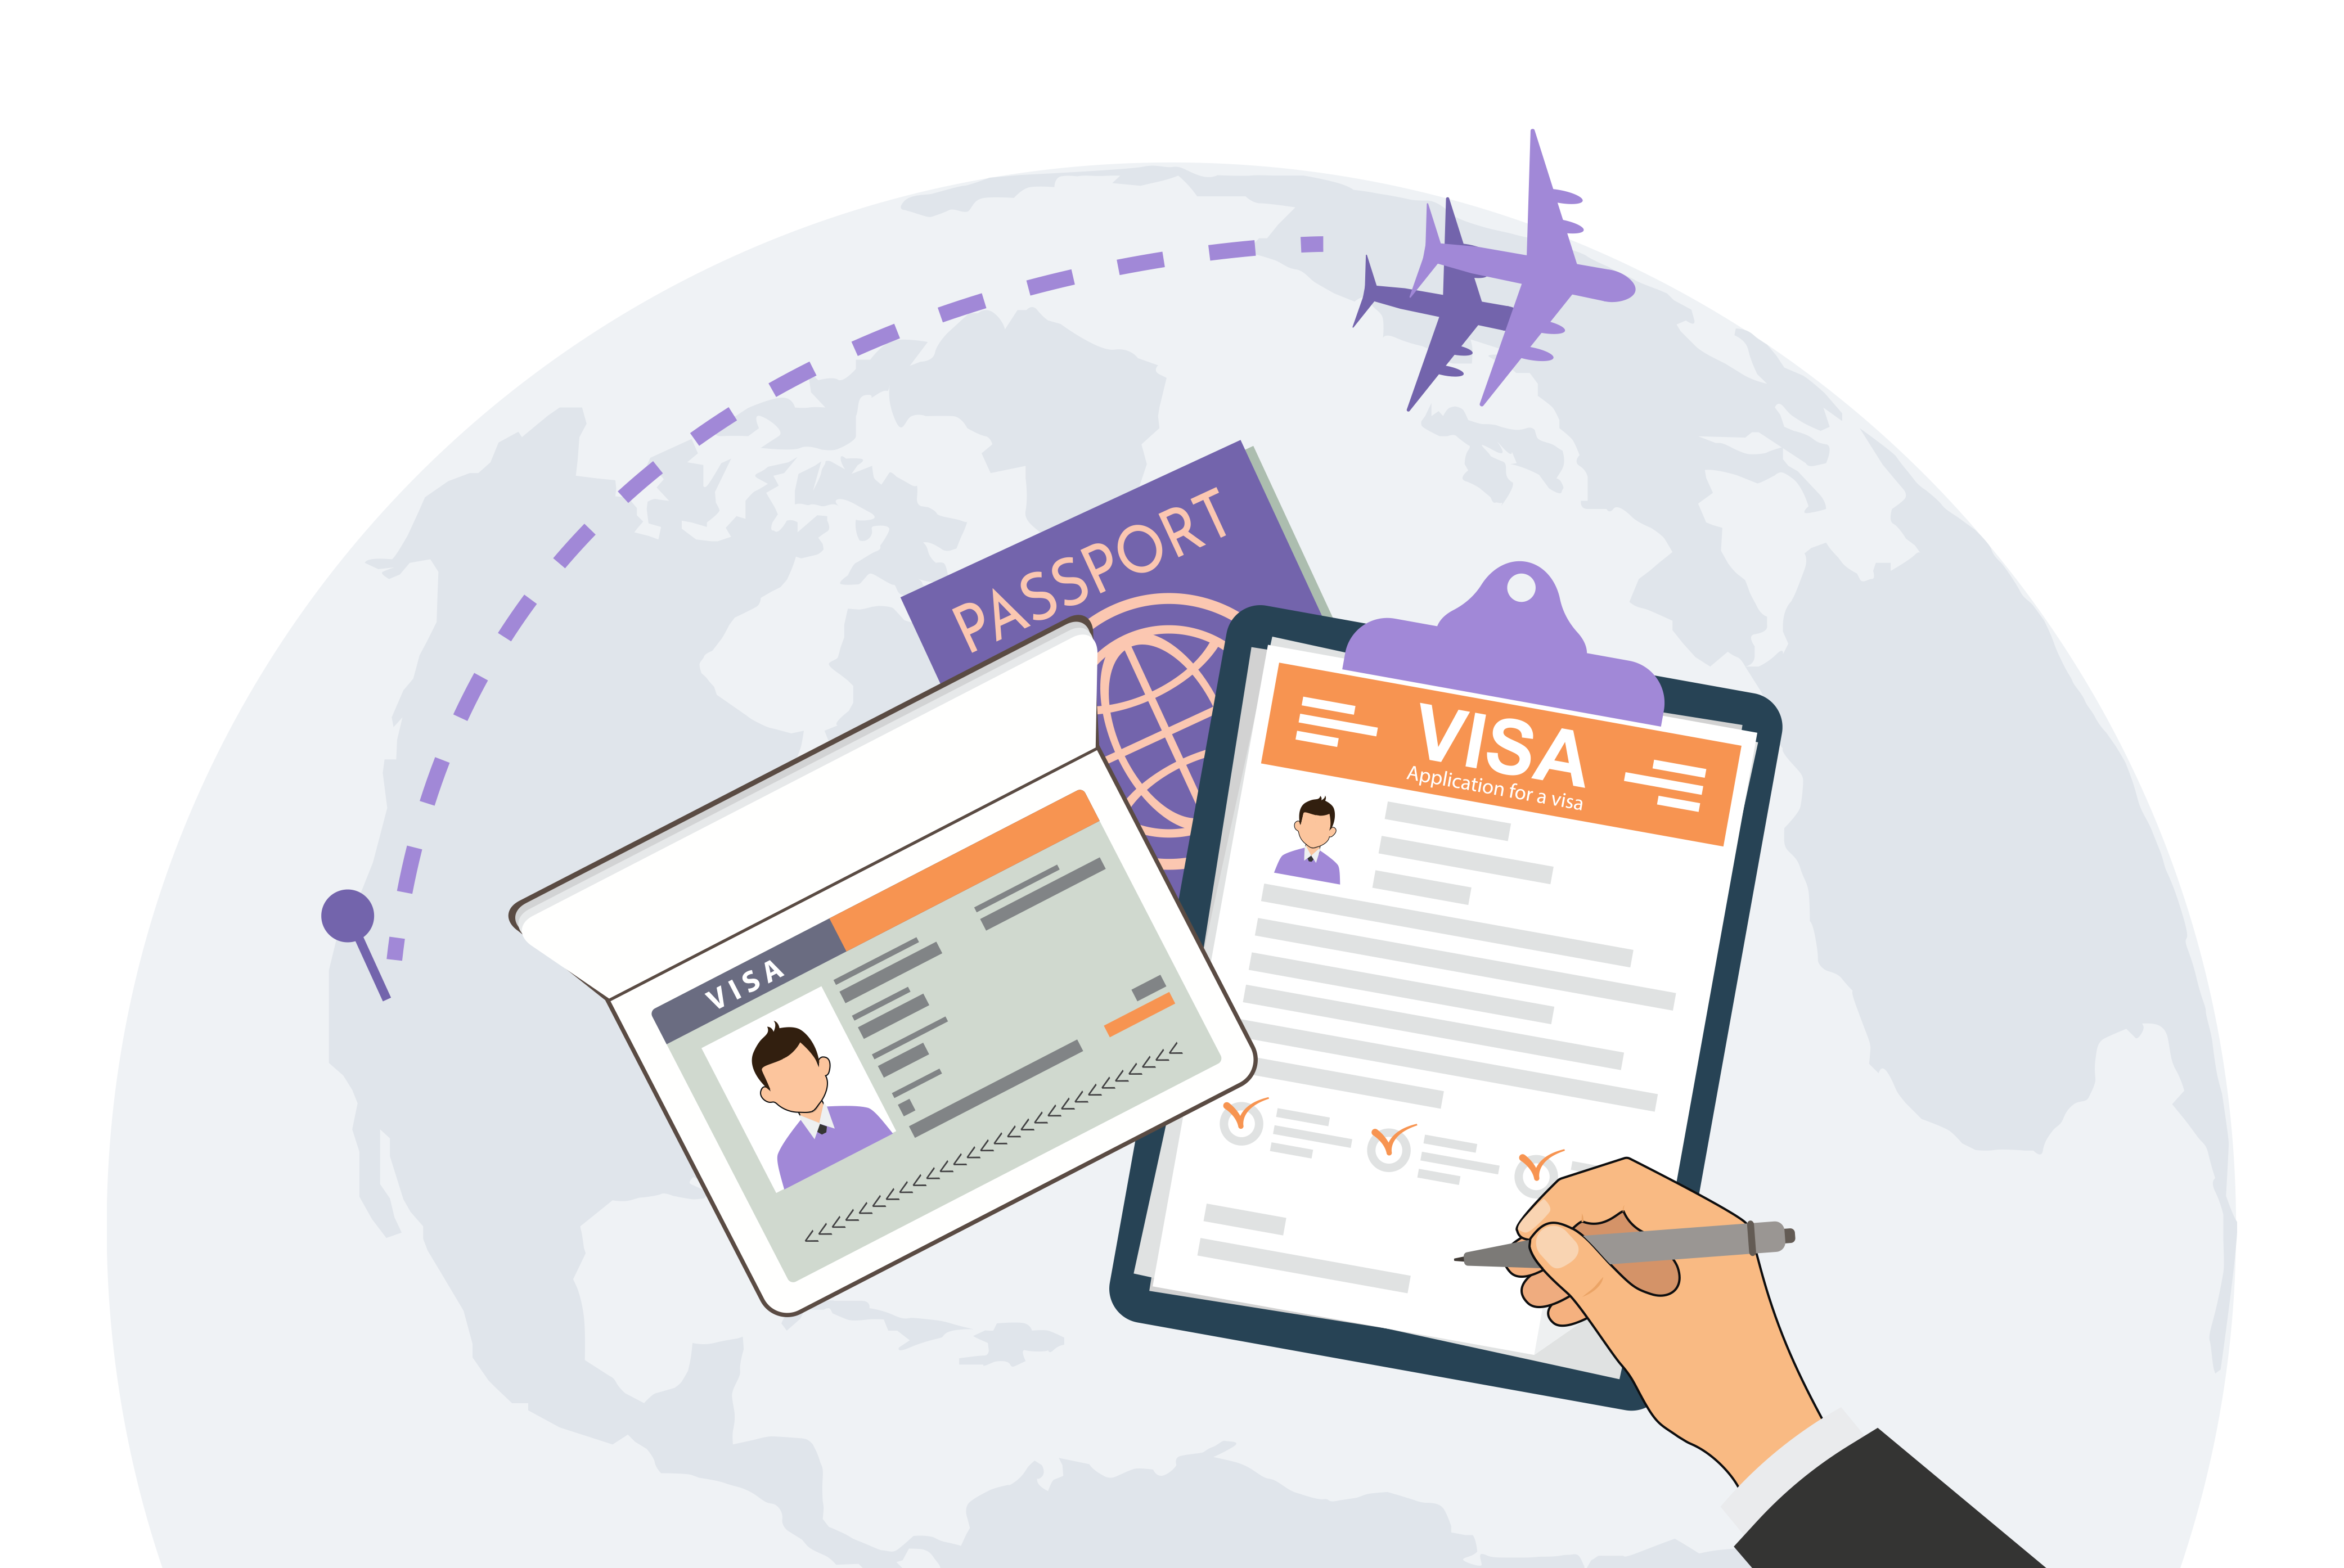 Визи за България,Видове визи,Туристическа виза,Бизнес виза,Студентска виза,Работна виза,Инвестиционна виза,Визи за пътуване,Визов режим,Визови изисквания,Визови процедури,Постоянен престой,Визови услуги,Пътеводител за визи,Визови консултации,Визови формуляри,Визови категории,Визова апликация,Визови офиси,Визови срокове,Визова информация,Визови документи,Визова подкрепа,Визови процедури за туристи,Визови услуги за бизнес,Визови условия за студенти,Визови изисквания за работа,Издаване на визи,Помощ с визи,Консултации за визи,